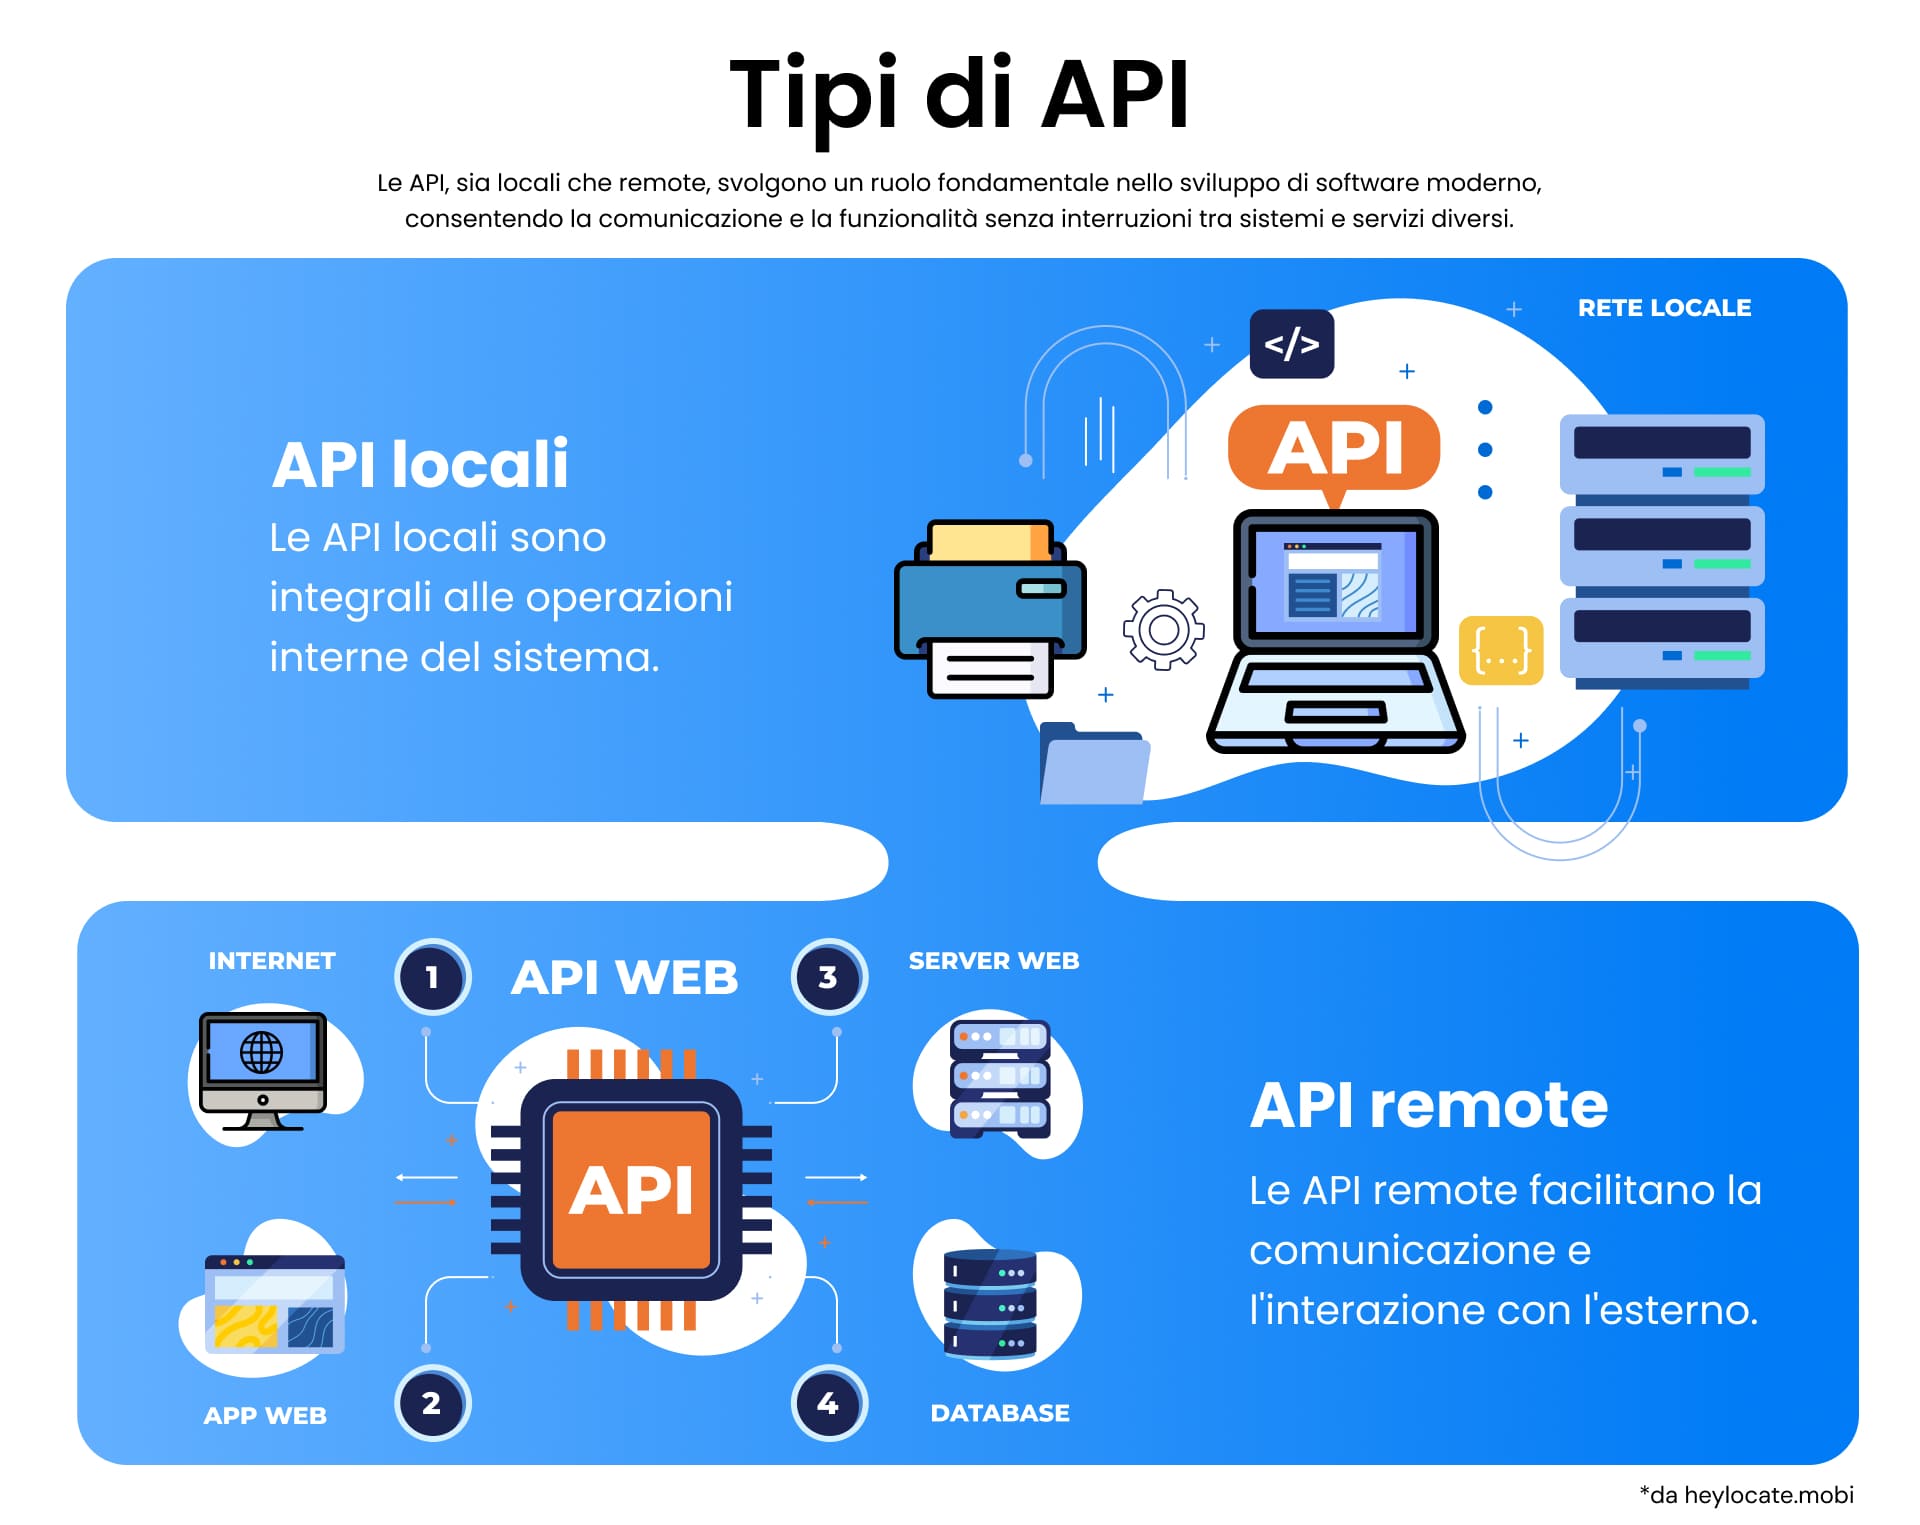 Grafico didattico che mostra due tipi di API: API locali, essenziali per le operazioni interne al sistema, e API remote, che consentono la comunicazione con l'esterno